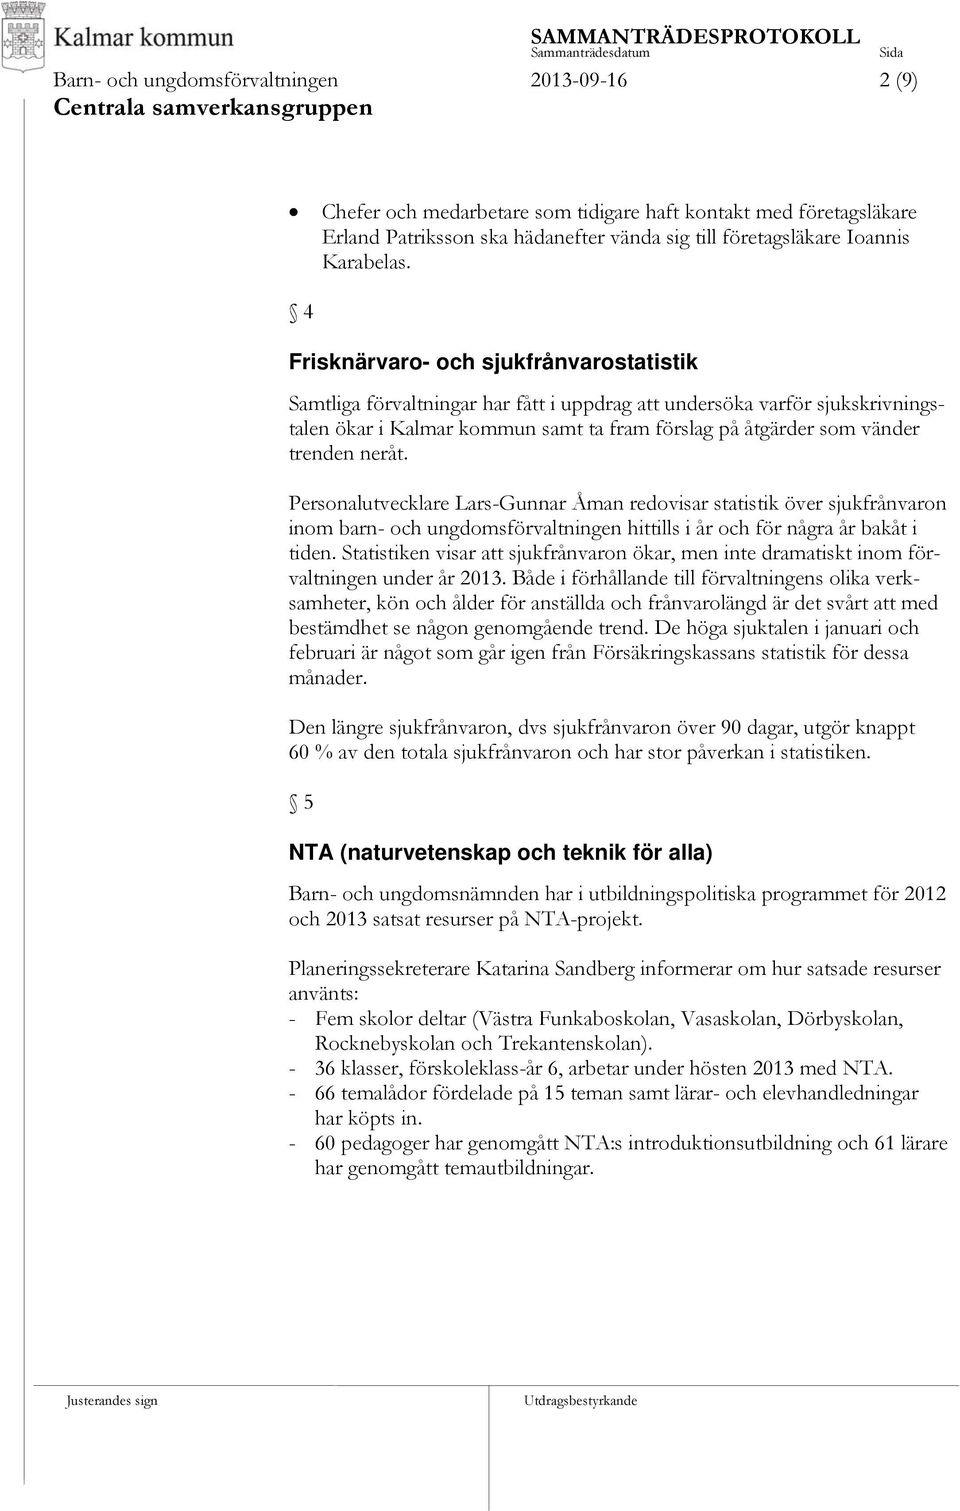 4 Frisknärvaro- och sjukfrånvarostatistik Samtliga förvaltningar har fått i uppdrag att undersöka varför sjukskrivningstalen ökar i Kalmar kommun samt ta fram förslag på åtgärder som vänder trenden